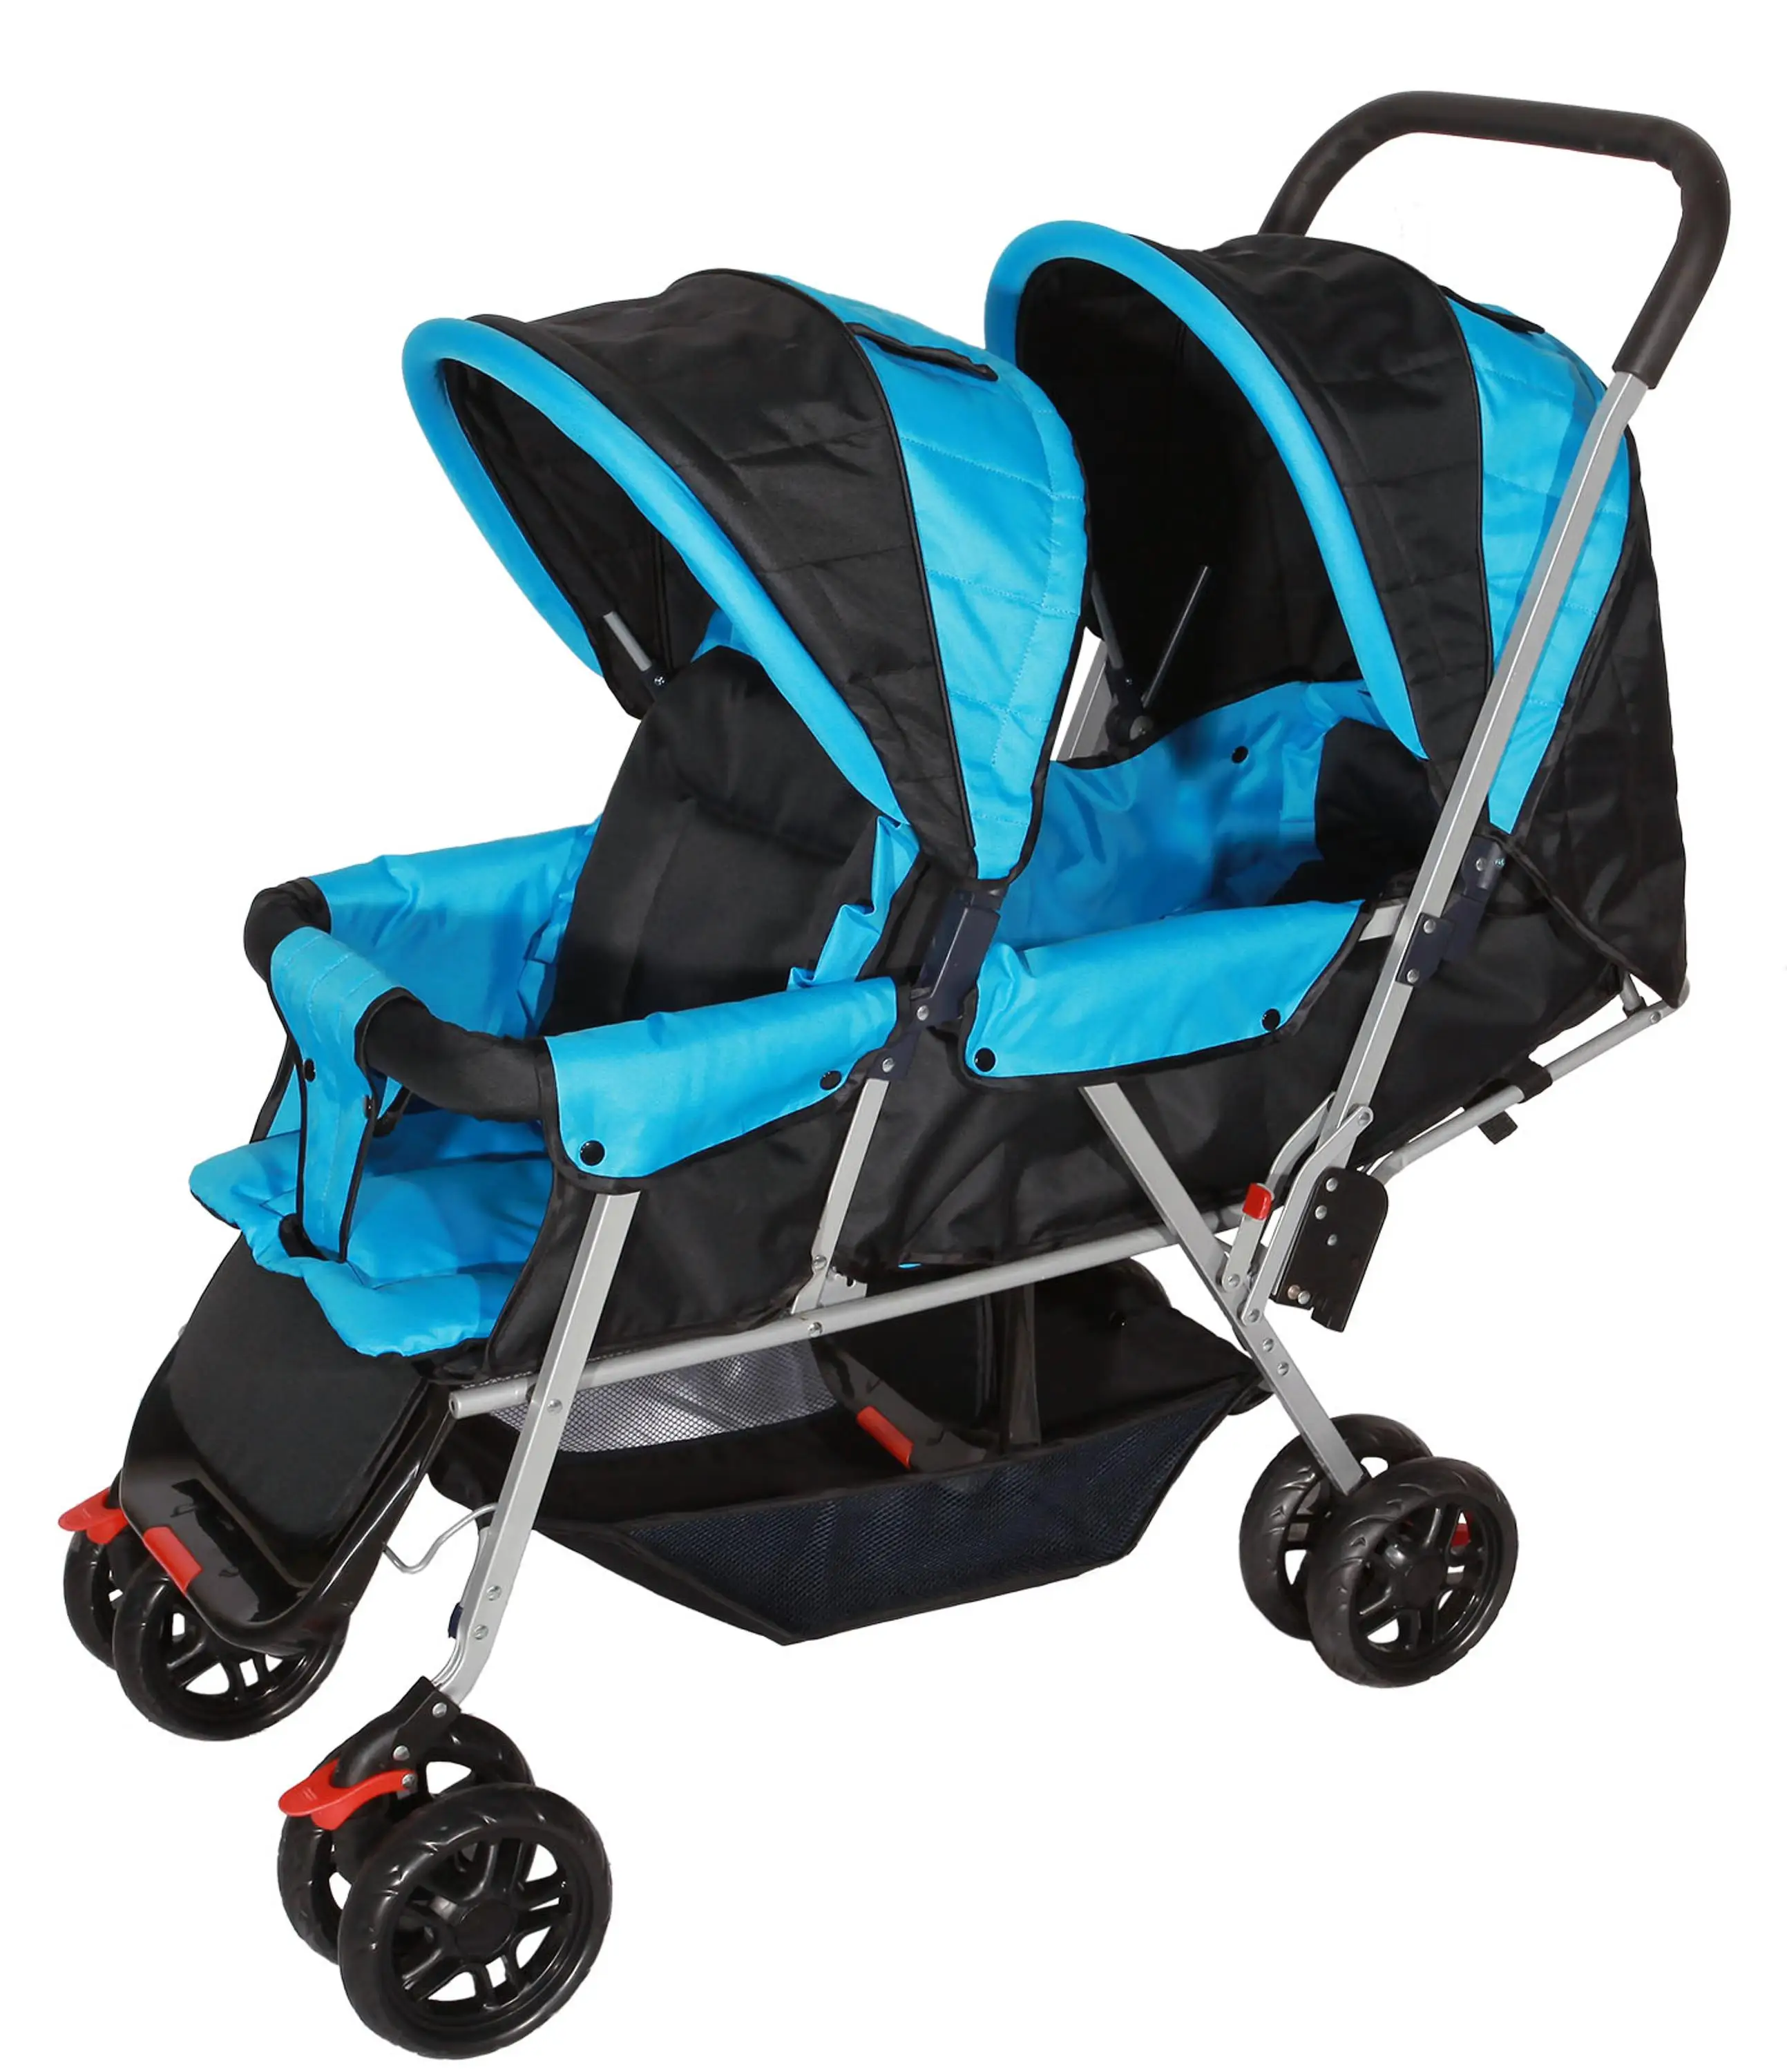 Двойная коляска для детей. Tianrui коляска прогулочная. Коляска Baby Pram. Коляска Беби бум. Коляска для двойни Baby Boom.